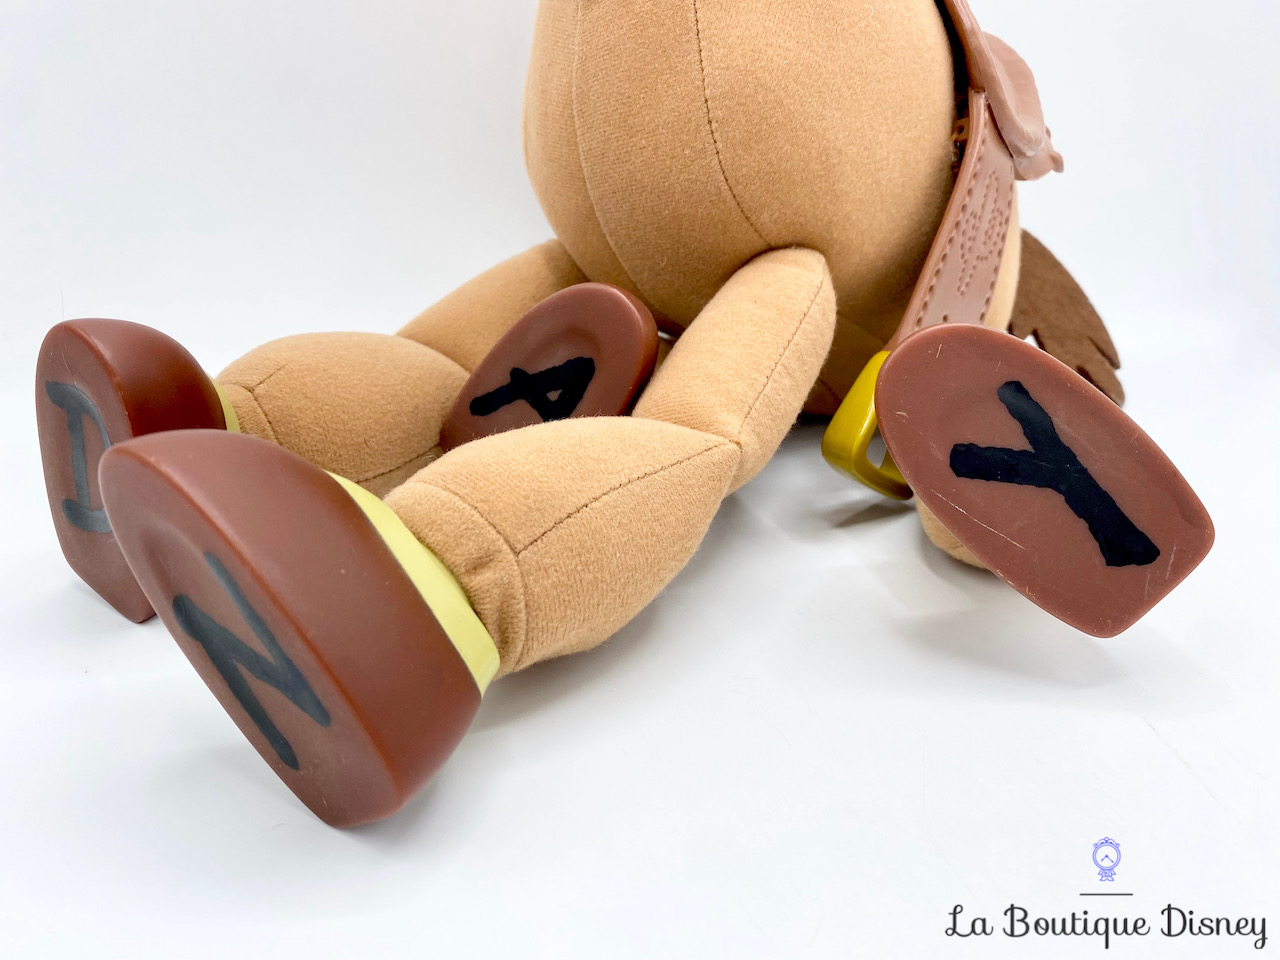 Disney Pixar Toy Story figurine articulée parlante interactive Buzz  L'Éclair, peut interagir avec les personnages d'autres films, jouet pour  enfant